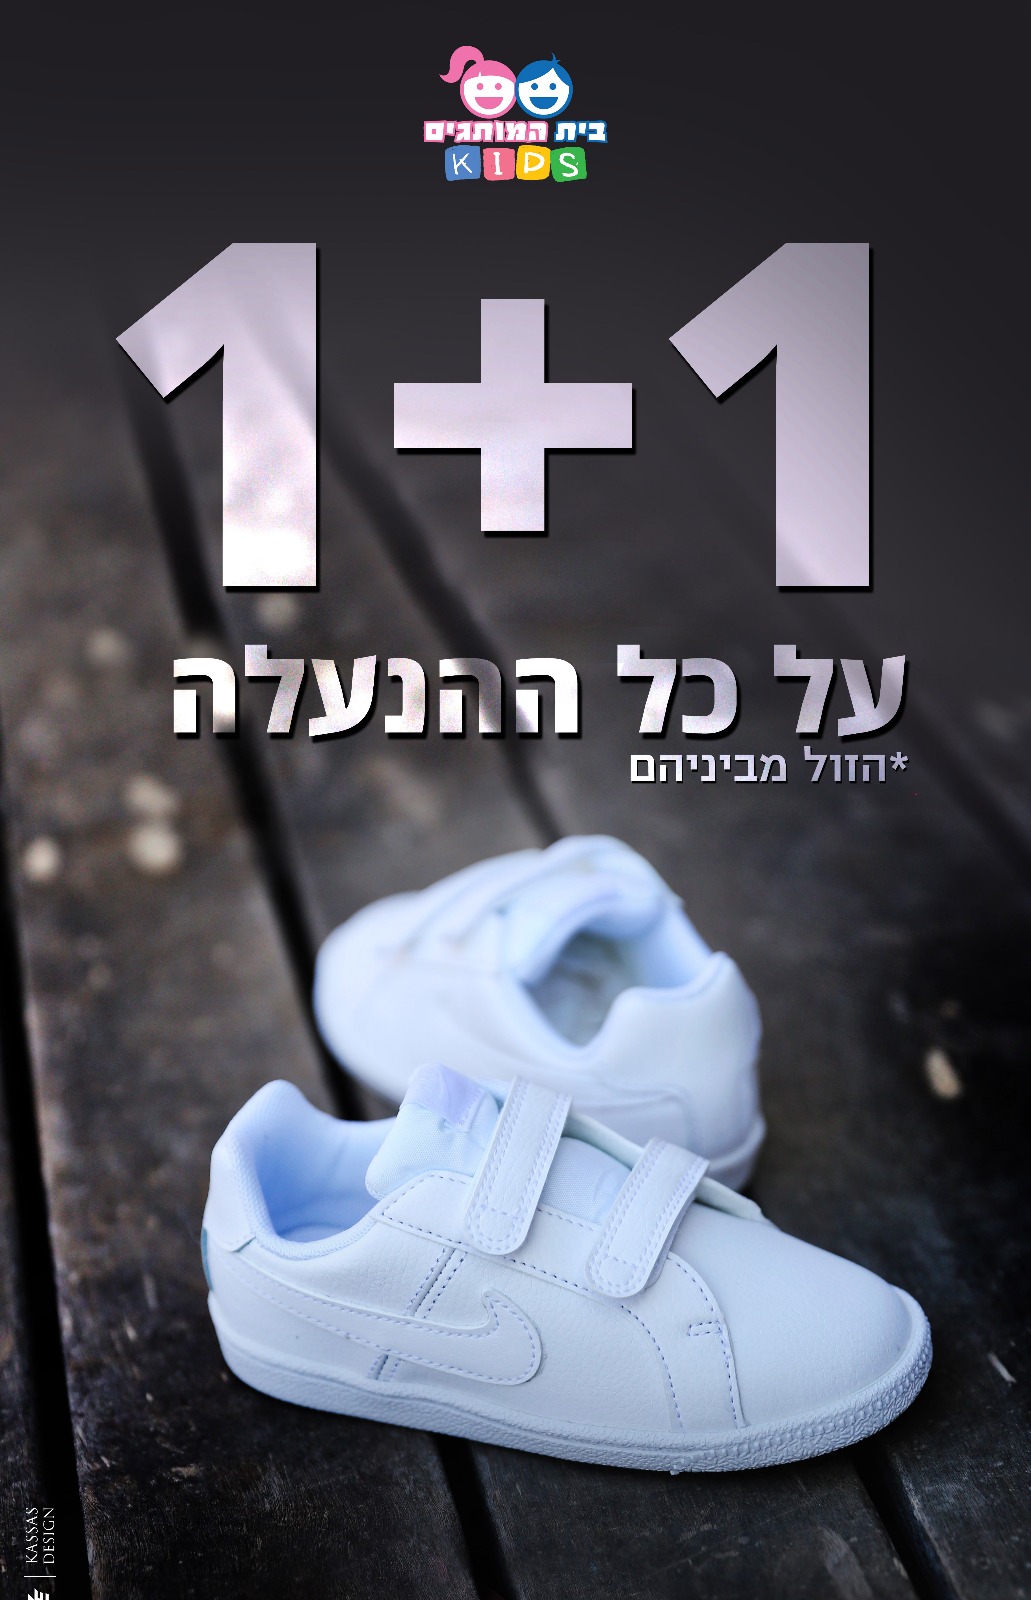 حملة (1+1) على الملابس والاحذية في بوتيك بيت هموتجيم KIDS بيافا